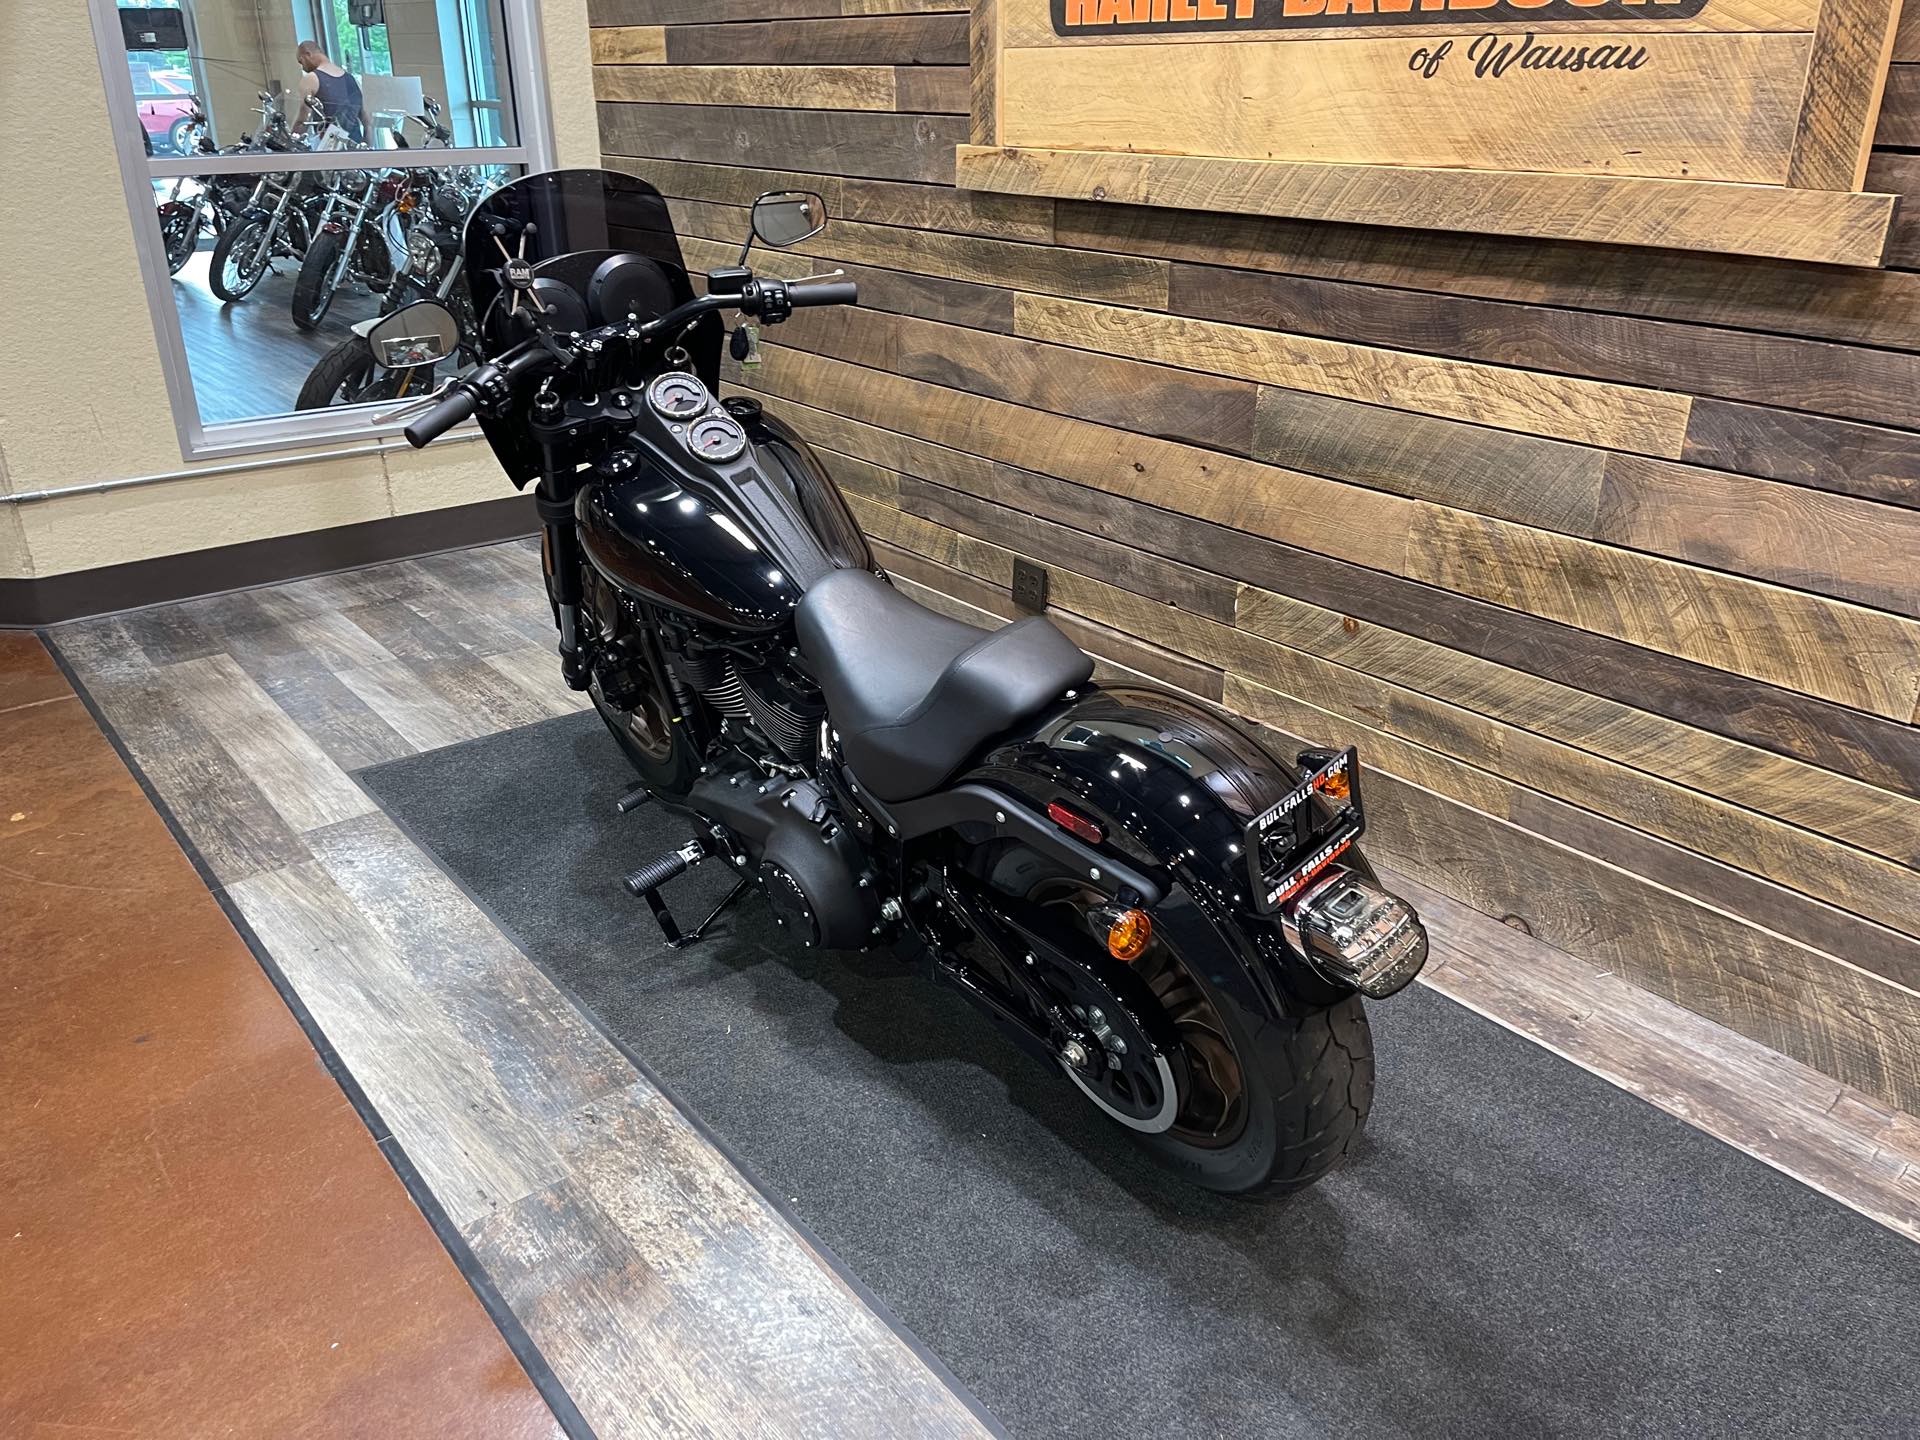 2021 Harley-Davidson Cruiser Low Rider S at Bull Falls Harley-Davidson